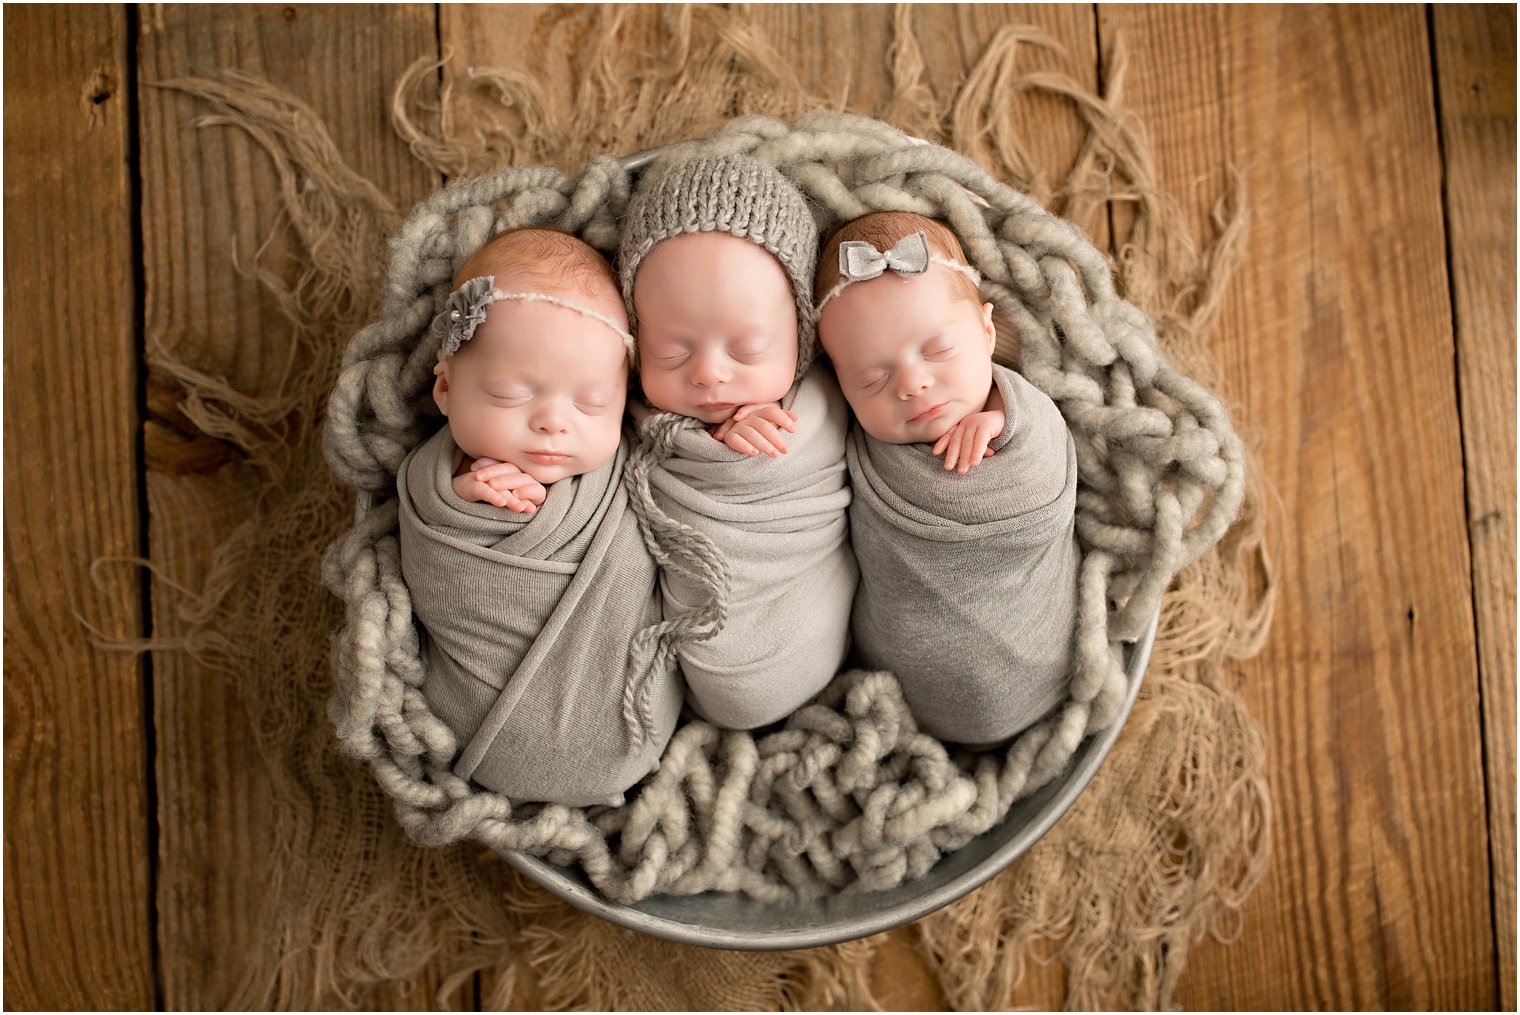 Triplets posed in a bucket